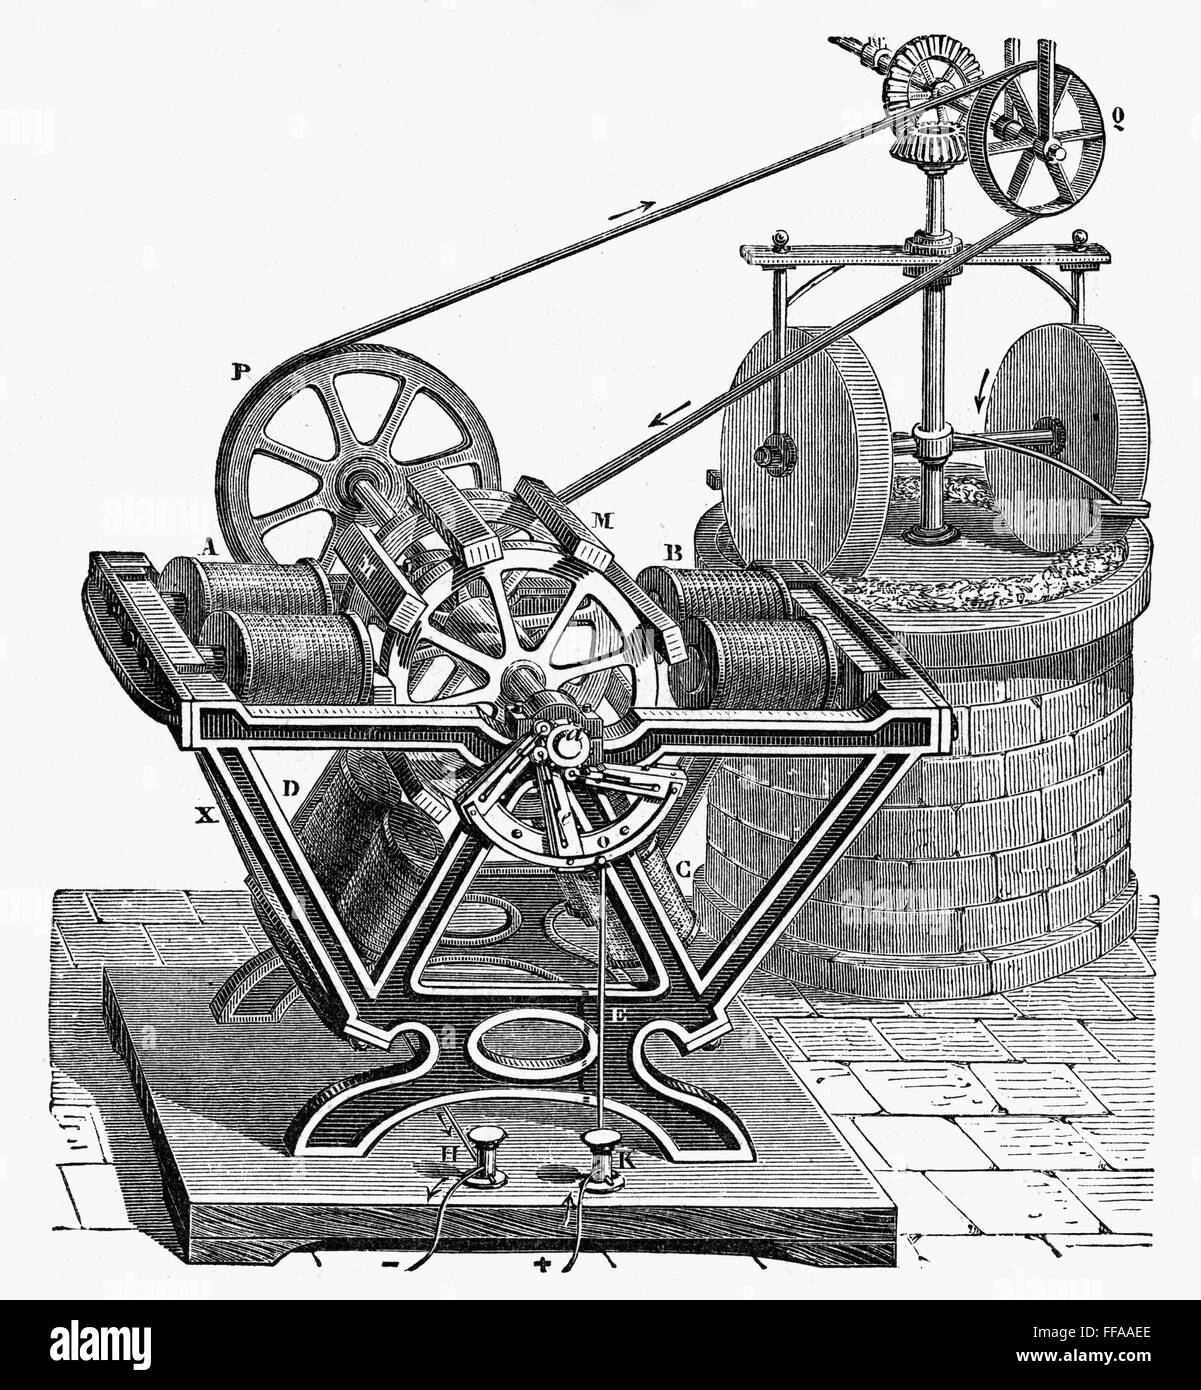 Elettricità: motori. /NFroment's motor di 1840s, imbrigliato in una coppia di macine. Foto Stock